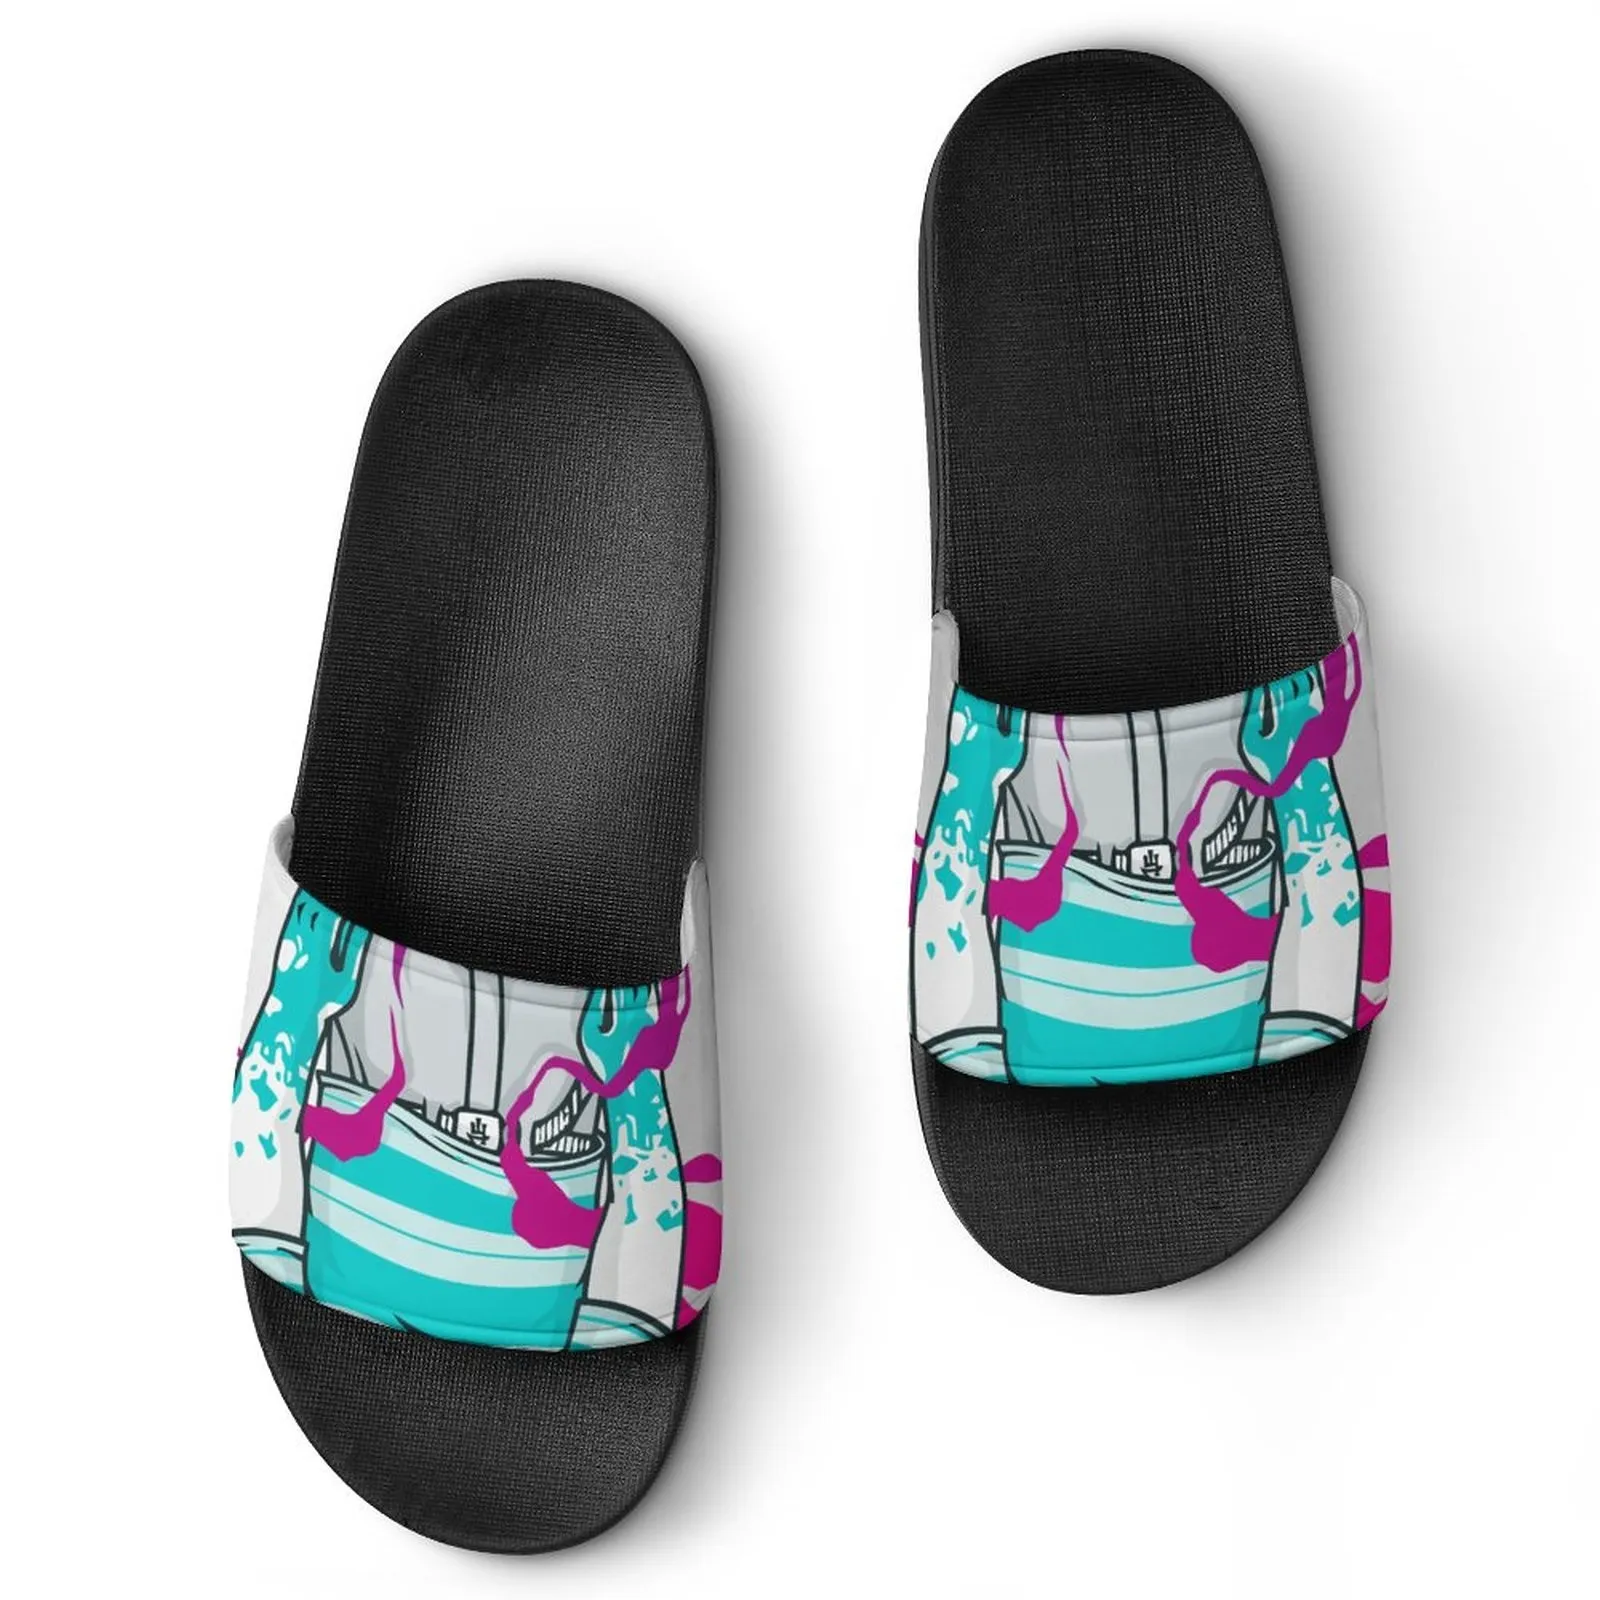 Scarpe classiche personalizzate fai-da-te Fornisci immagini per supportare la personalizzazione pantofole sandali uomo donna hojbs djmpw iokjebe